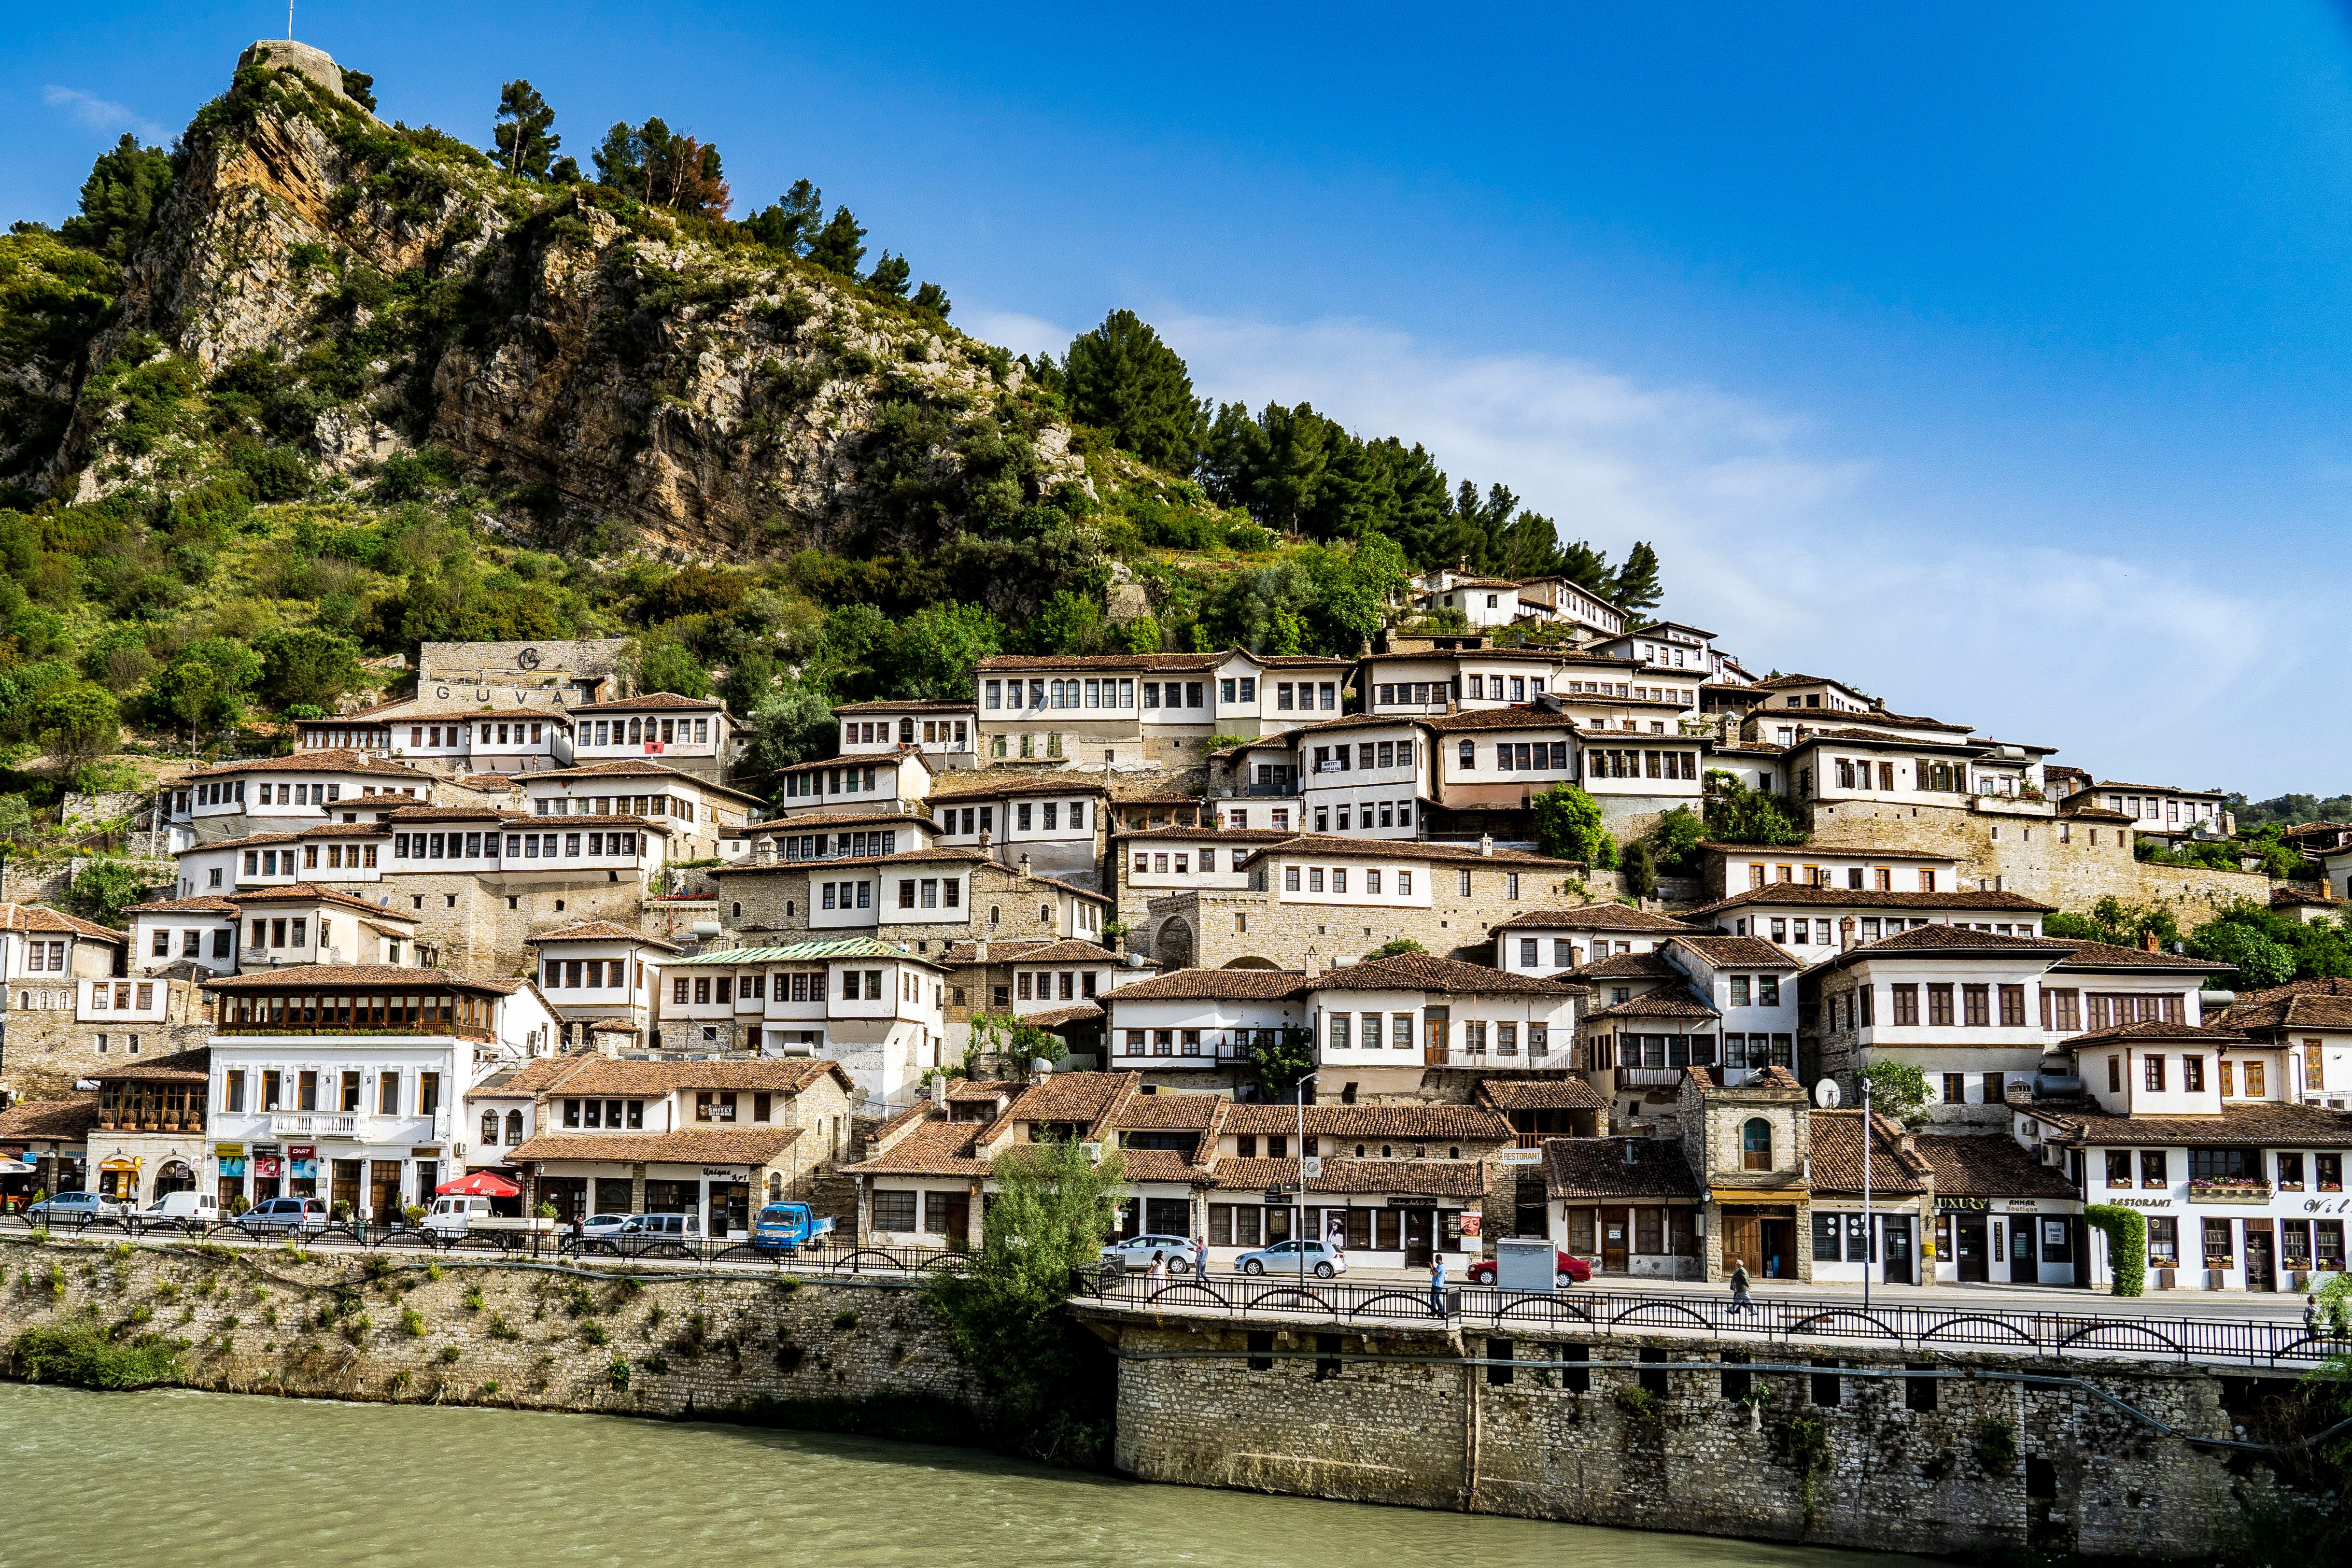 La ciudad de Berat, famosa por su arquitectura y conocida como la ciudad de las mil ventanas, es patrimonio mundial de la Unesco.